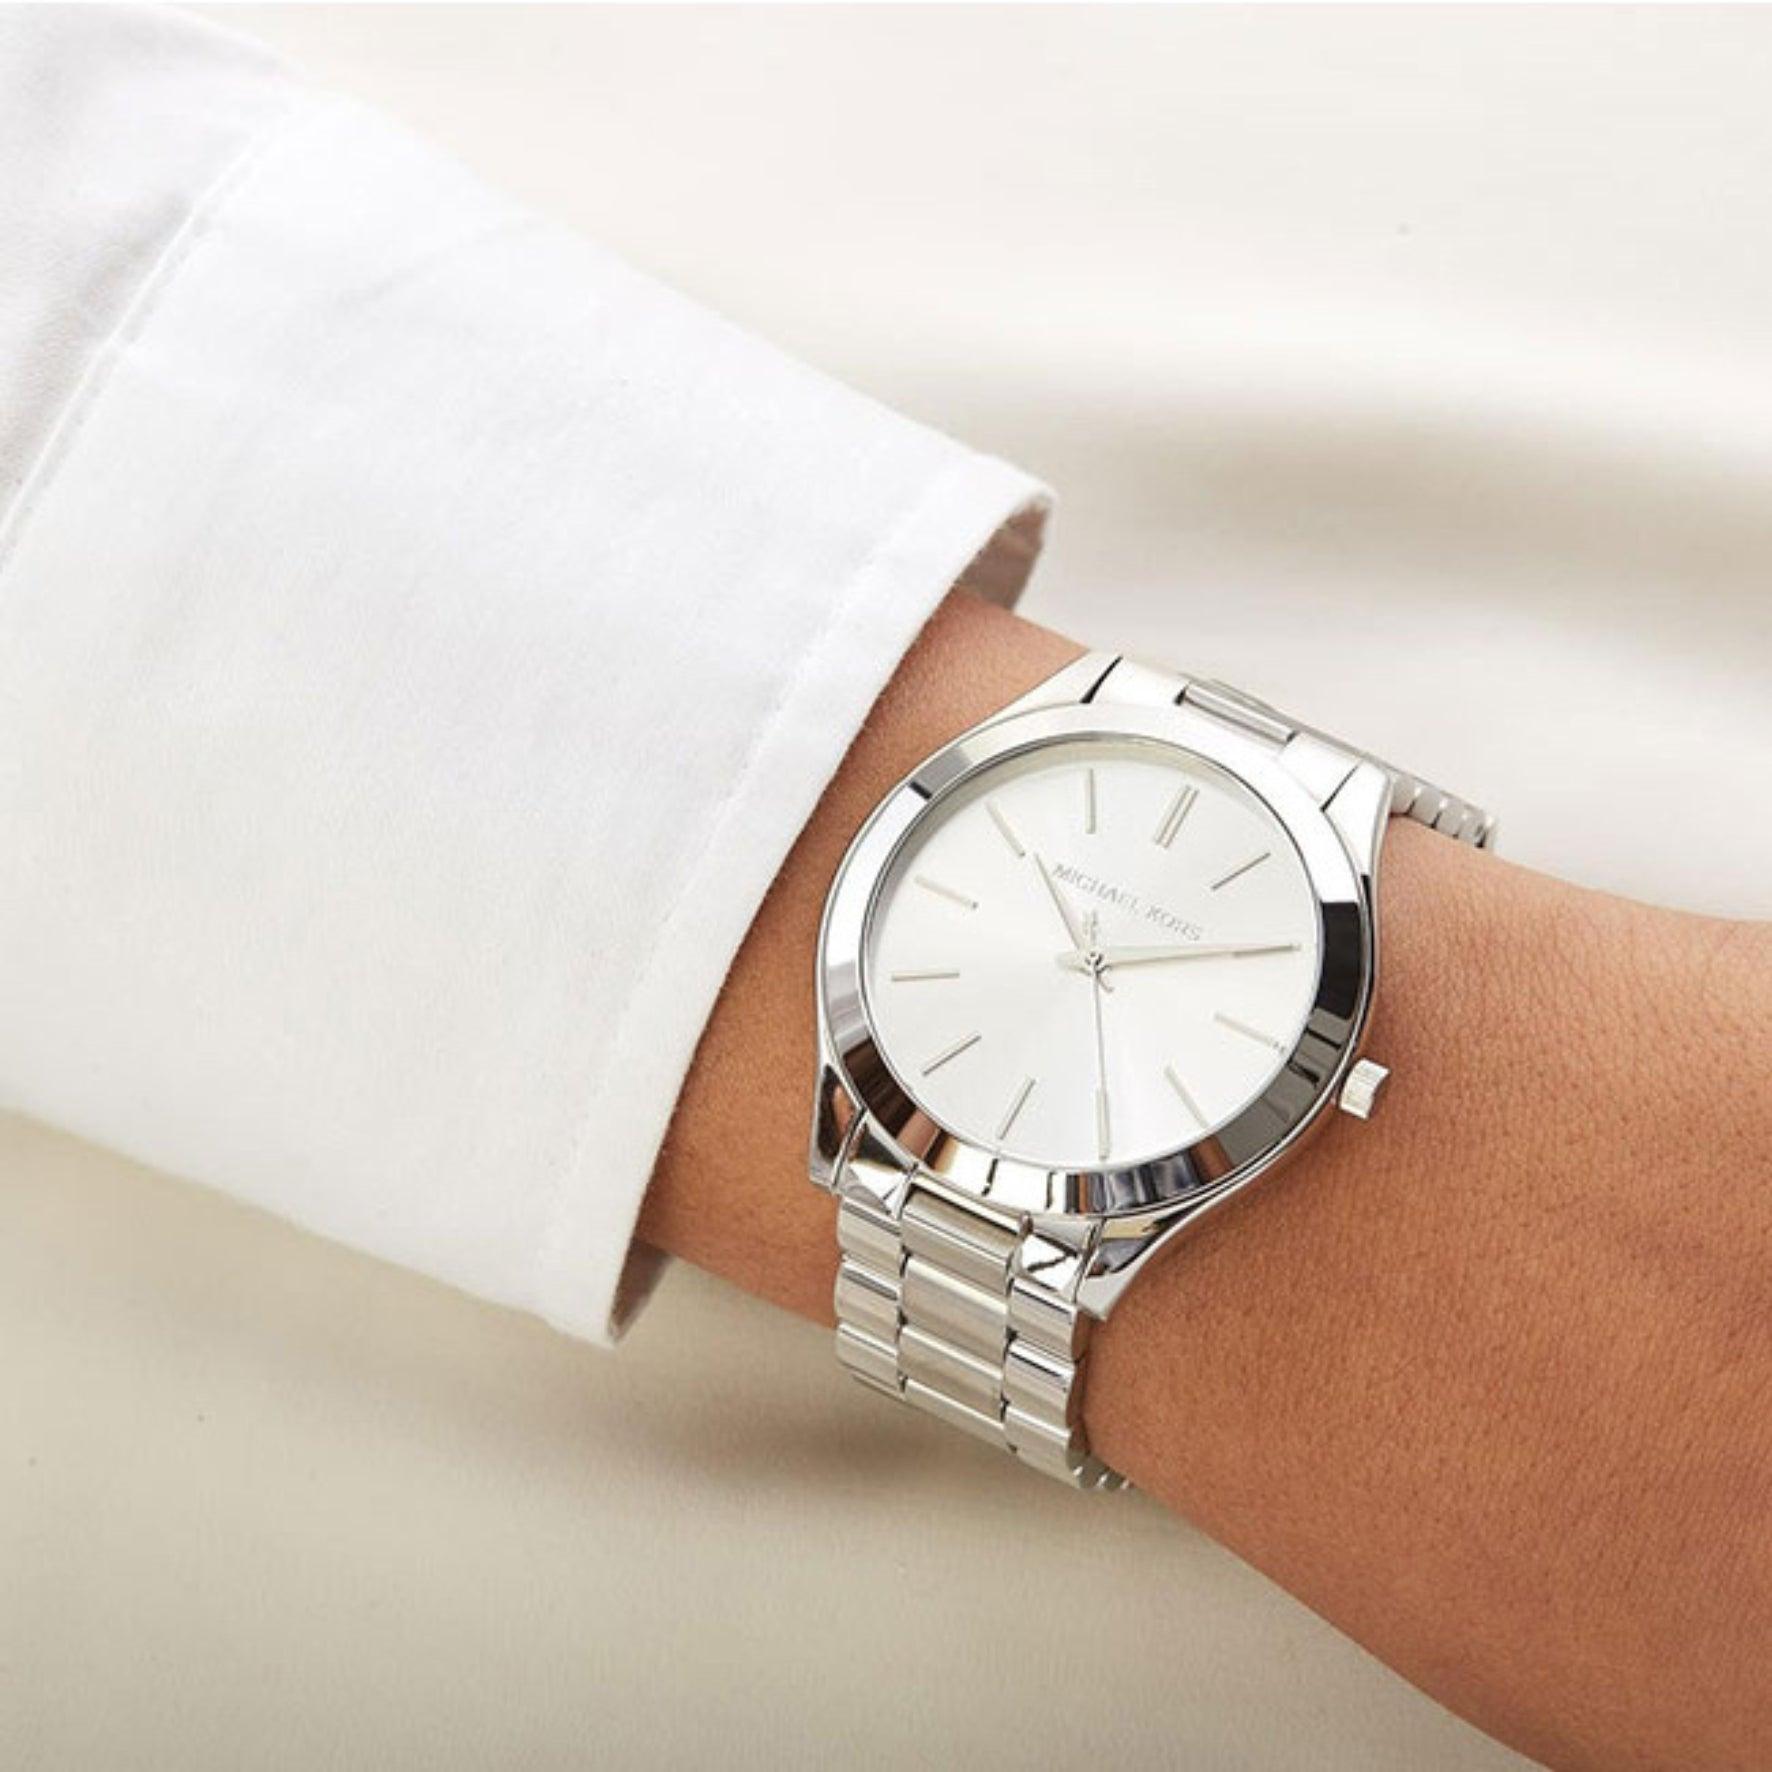 Γυναικείο ρολόι Michael Kors Slim Runway MK3178 με ασημί ατσάλινο μπρασελέ, στρογγυλό ασημί καντράν και στεφάνι 42mm.